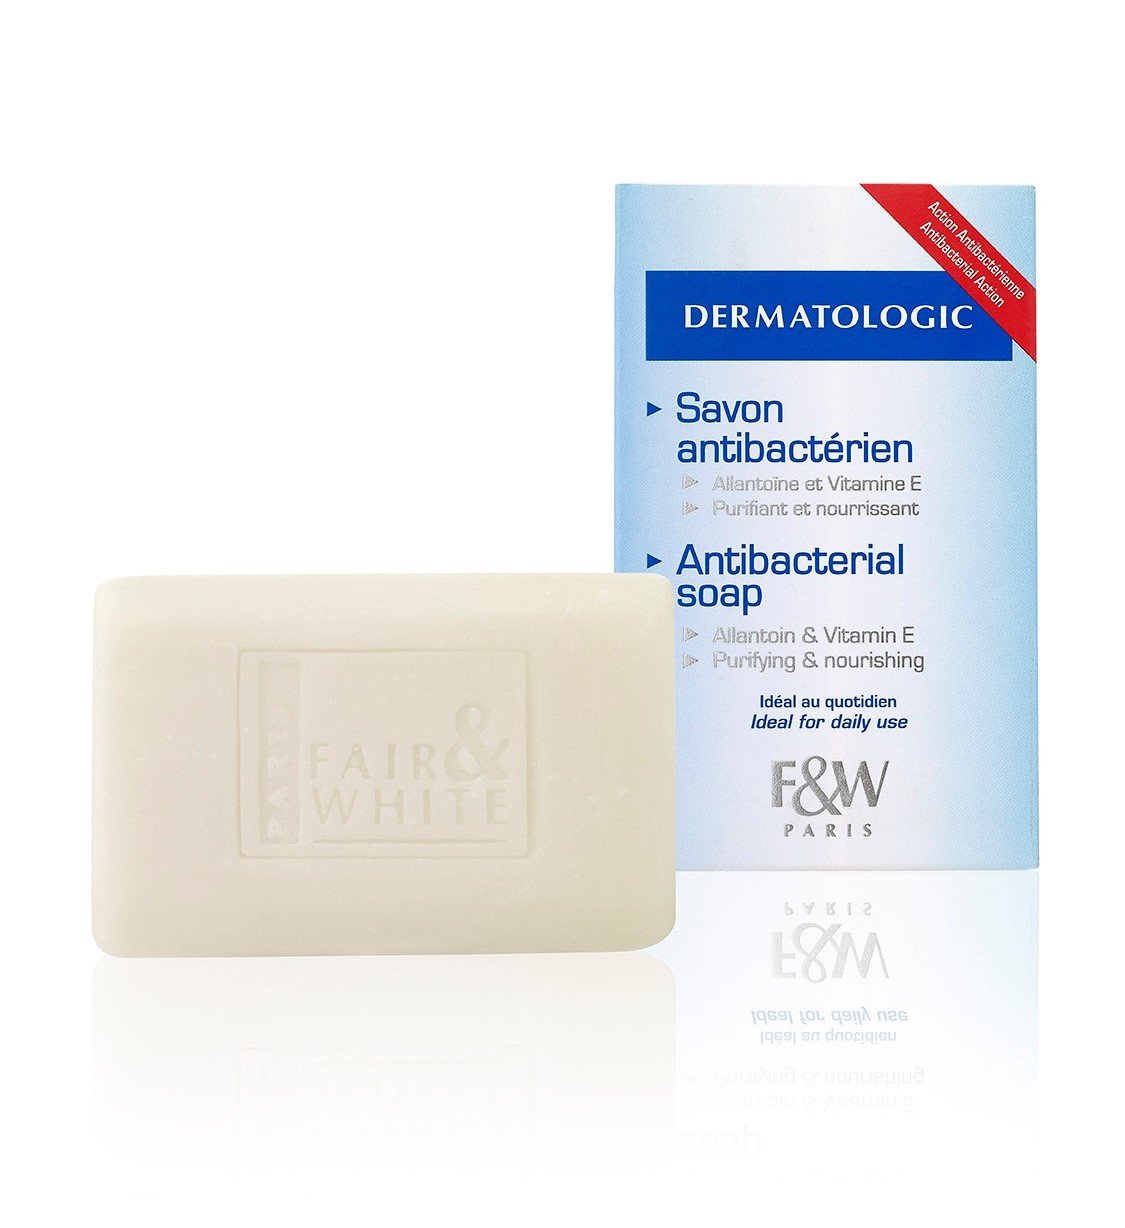 Fair and White Original Antibacterial Soap 200gr